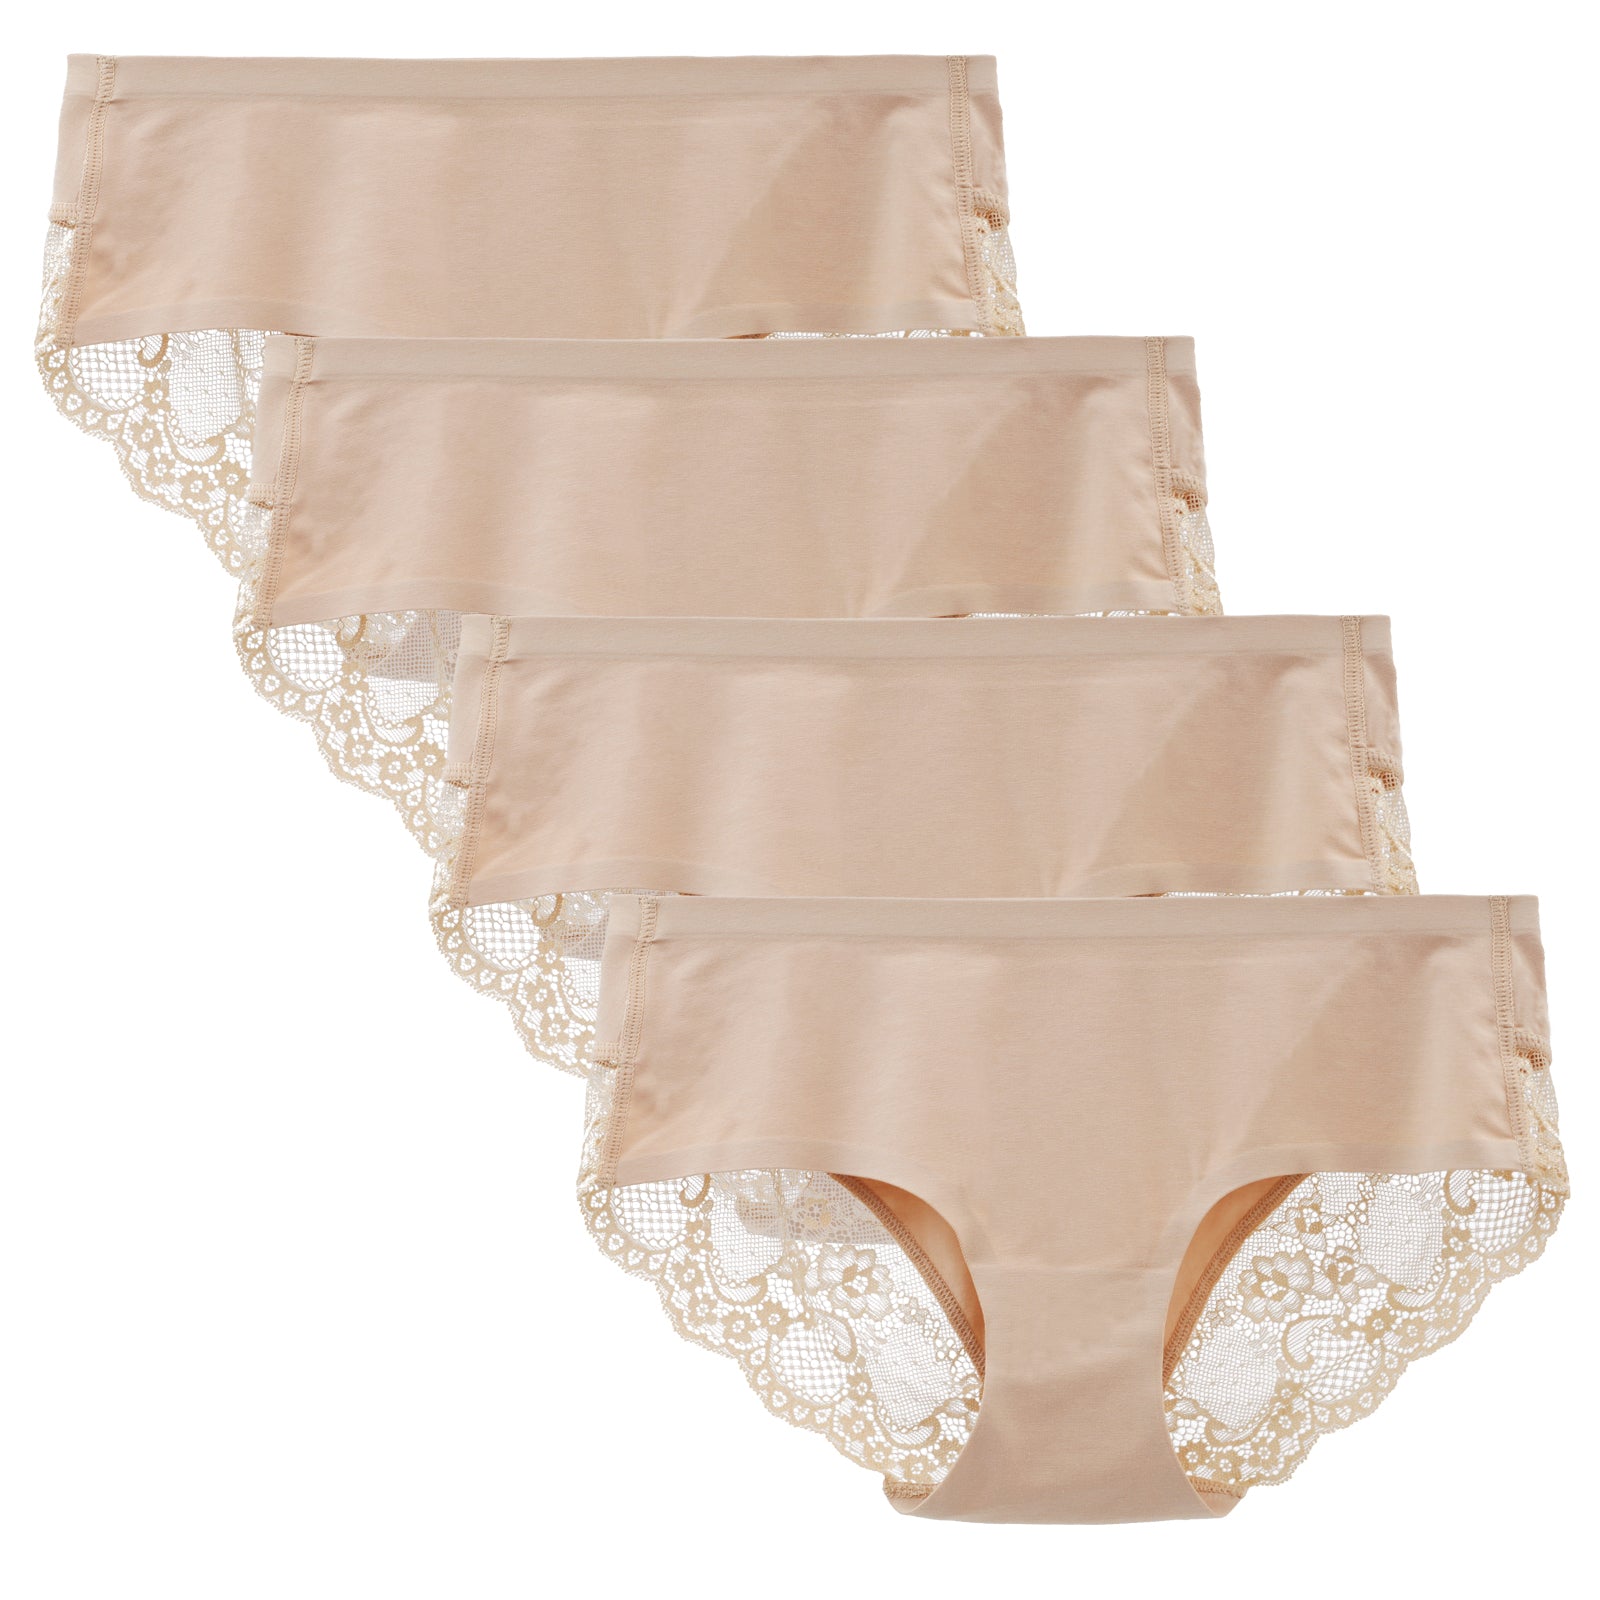 LIQQY Women's Underwear Cotton Briefs Breathable High Waist Panty